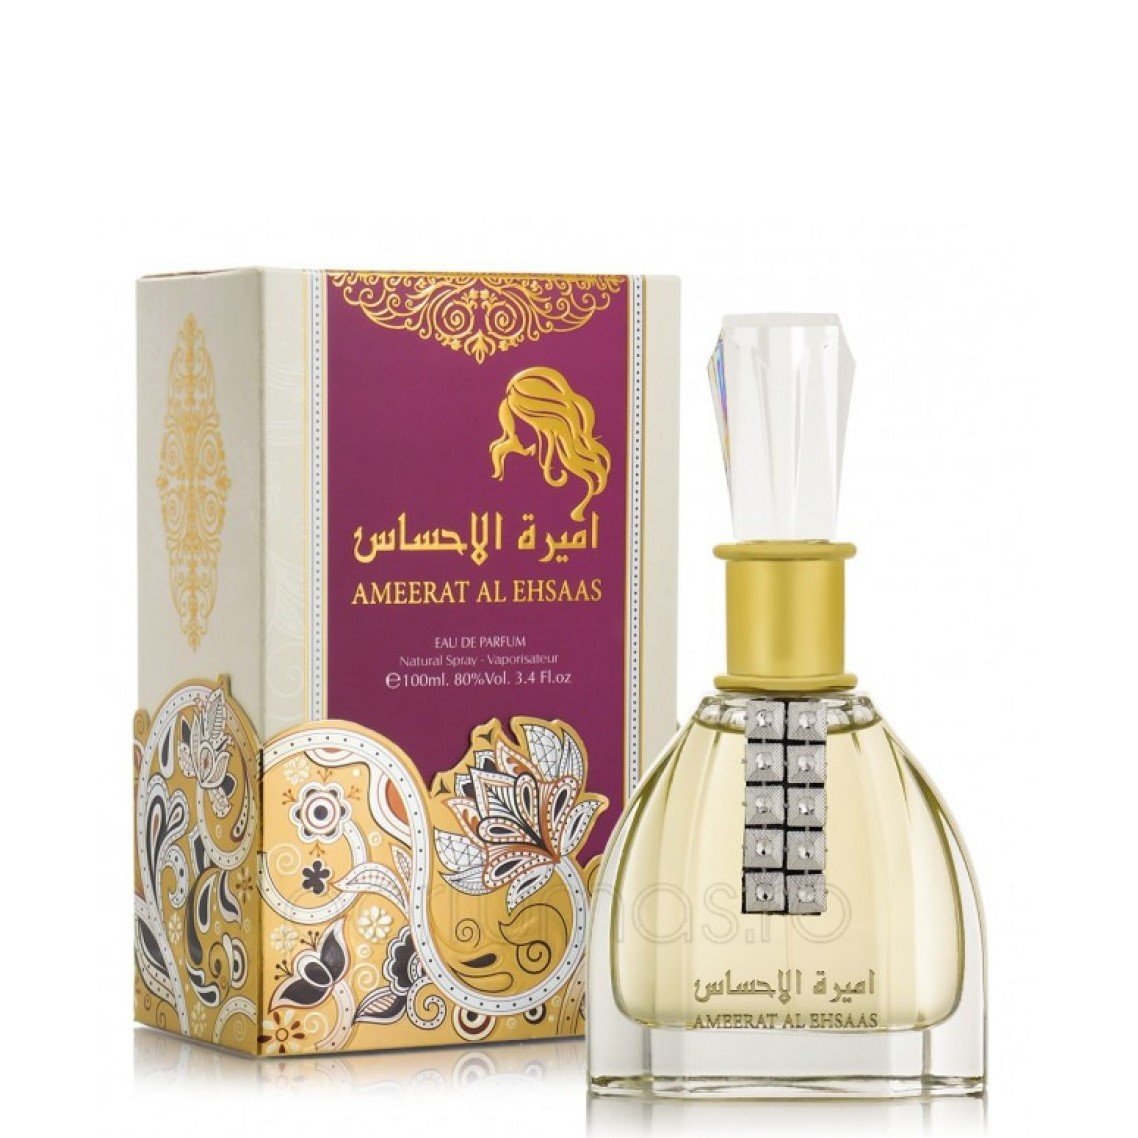 100 ml Woda Perfumowana Ameerat Al Ehsaas Ostro- owocowy zapach dla kobiet